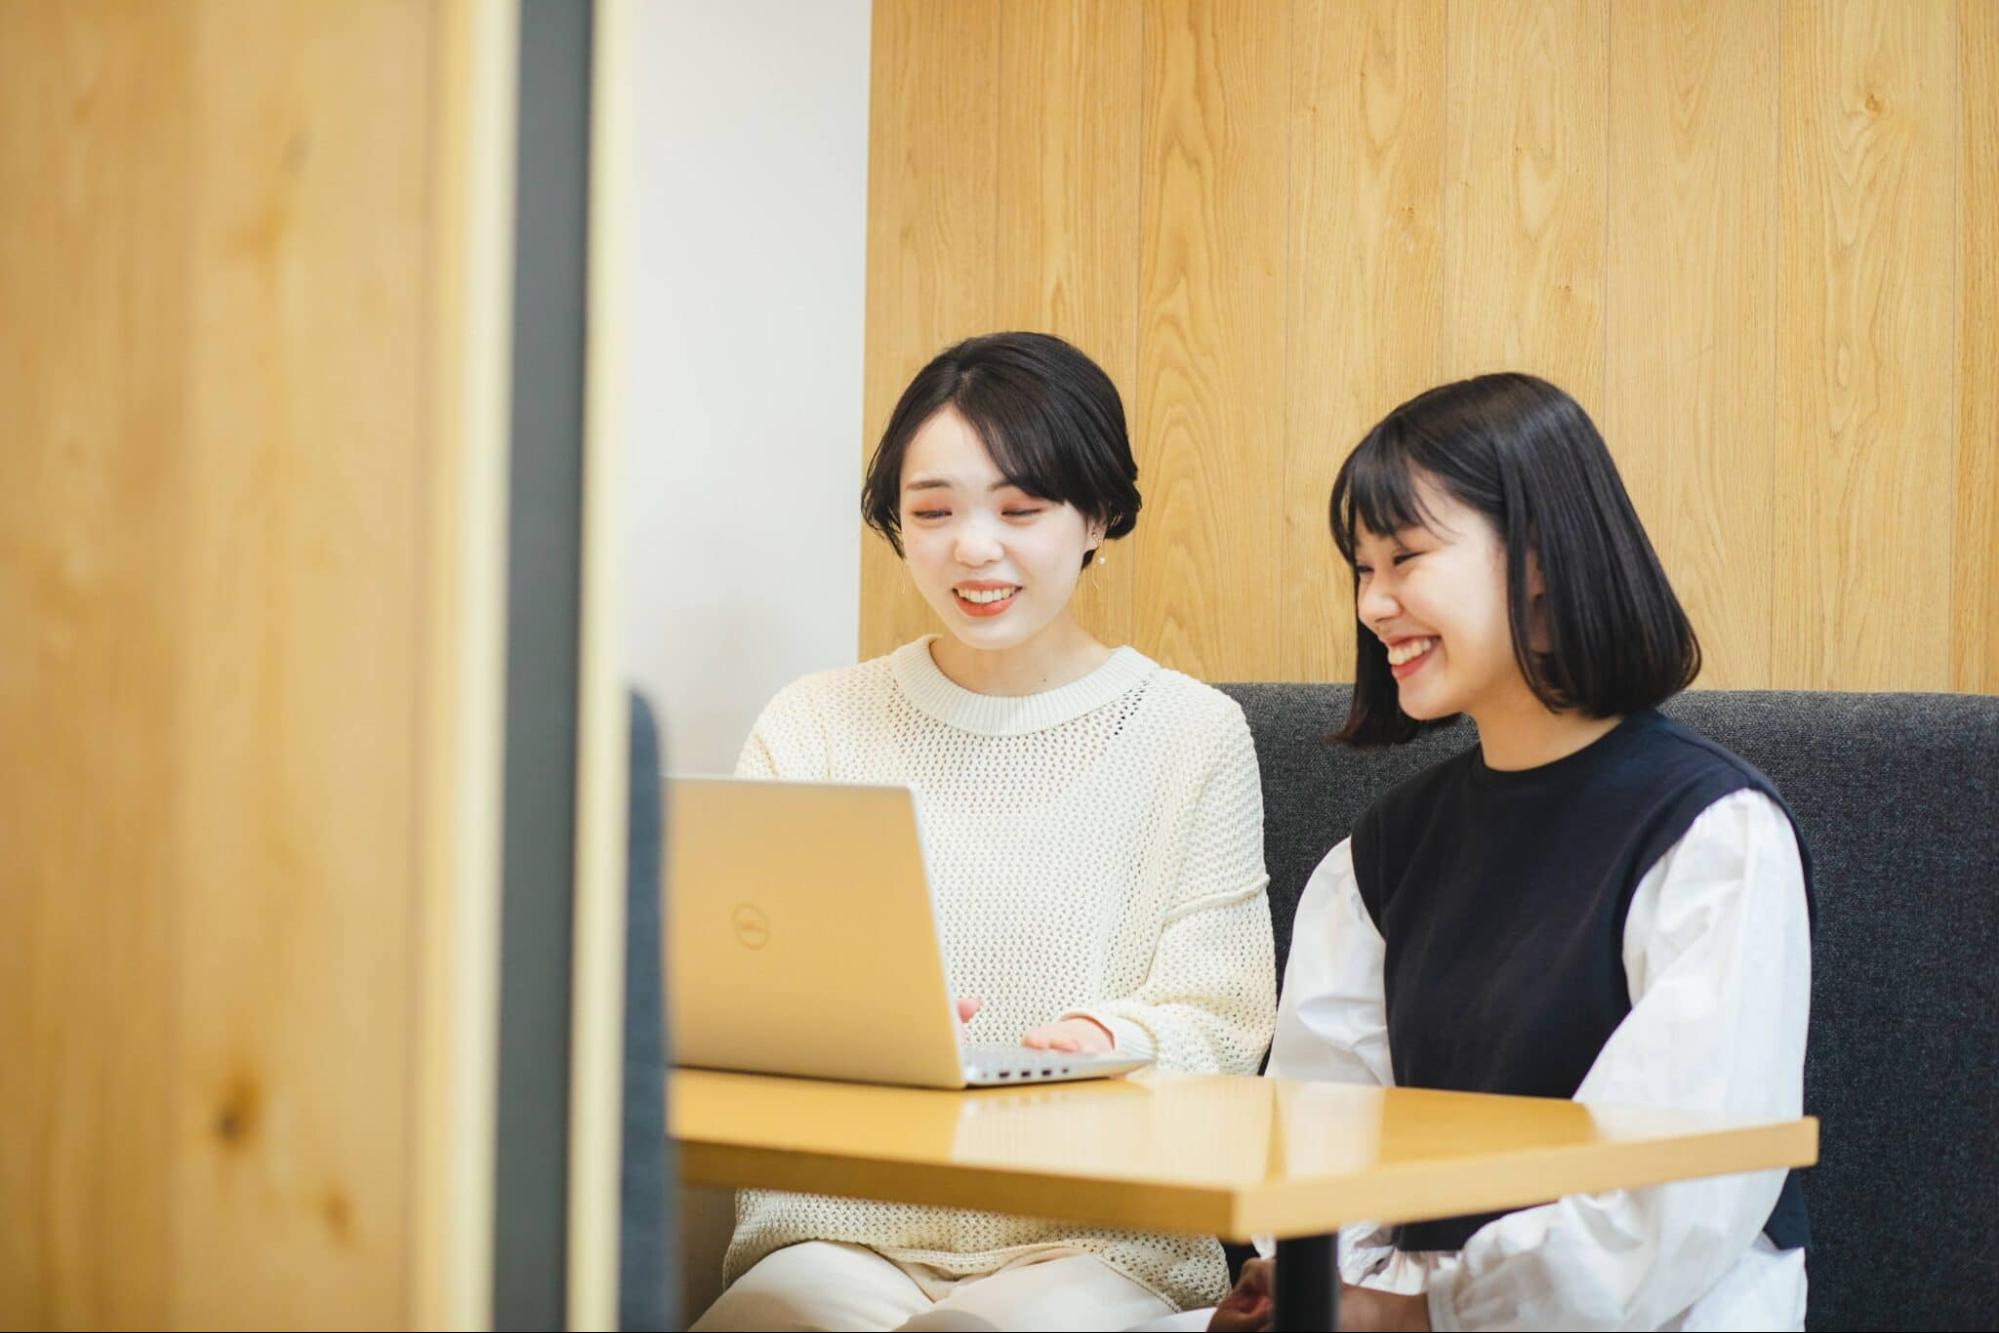 パソコンの画面を見ながら笑い合う女性2人